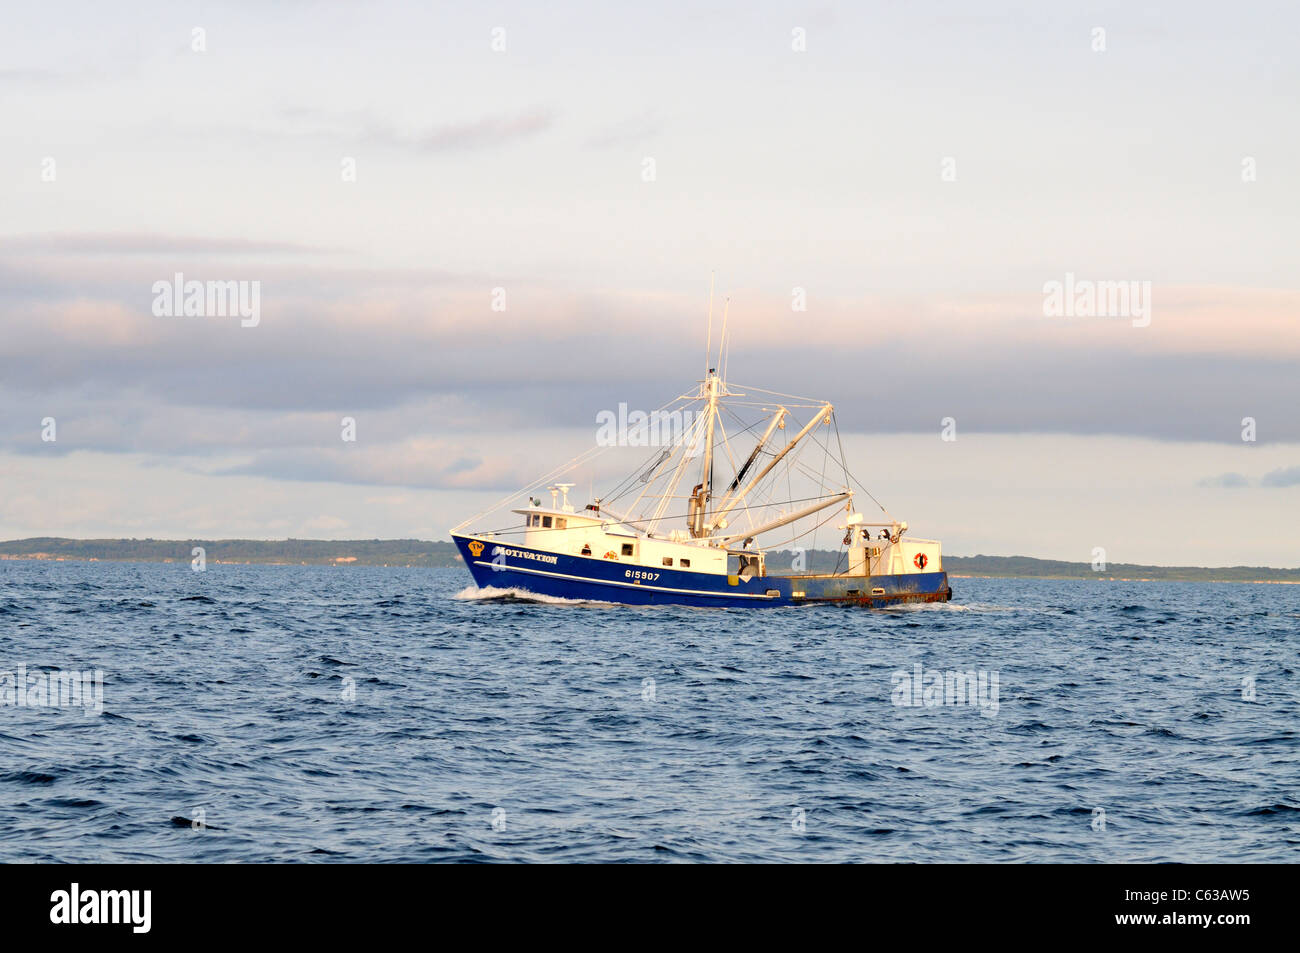 Backbordseite des blauen geschälten arbeiten Fischerboot vor der Küste von Cape Cod, USA. Stockfoto